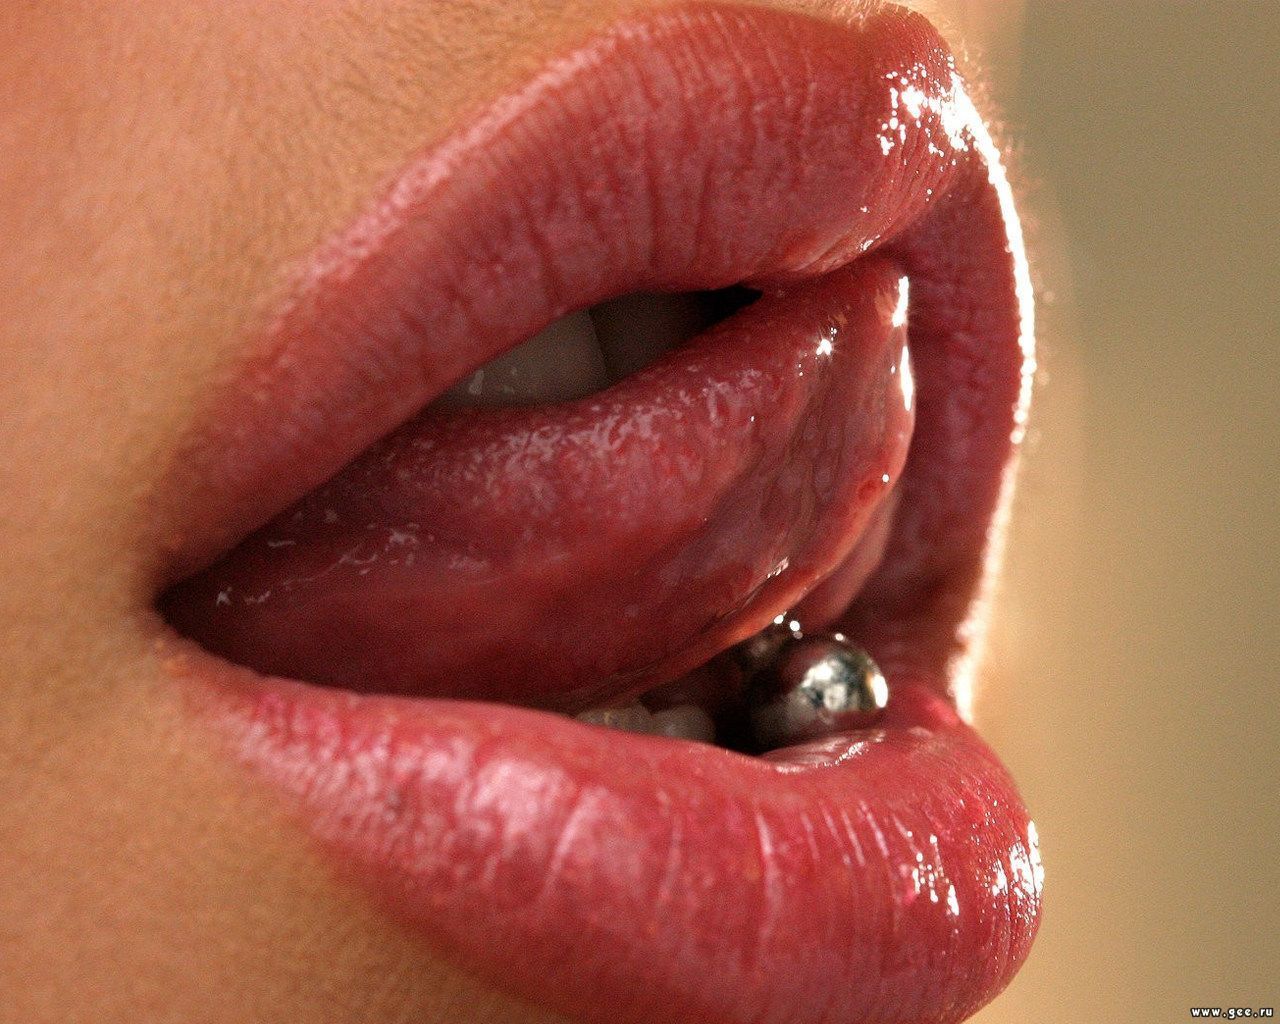 Funtar du på att pierca dig på tungan? Det kan vara förenat med livsfara.